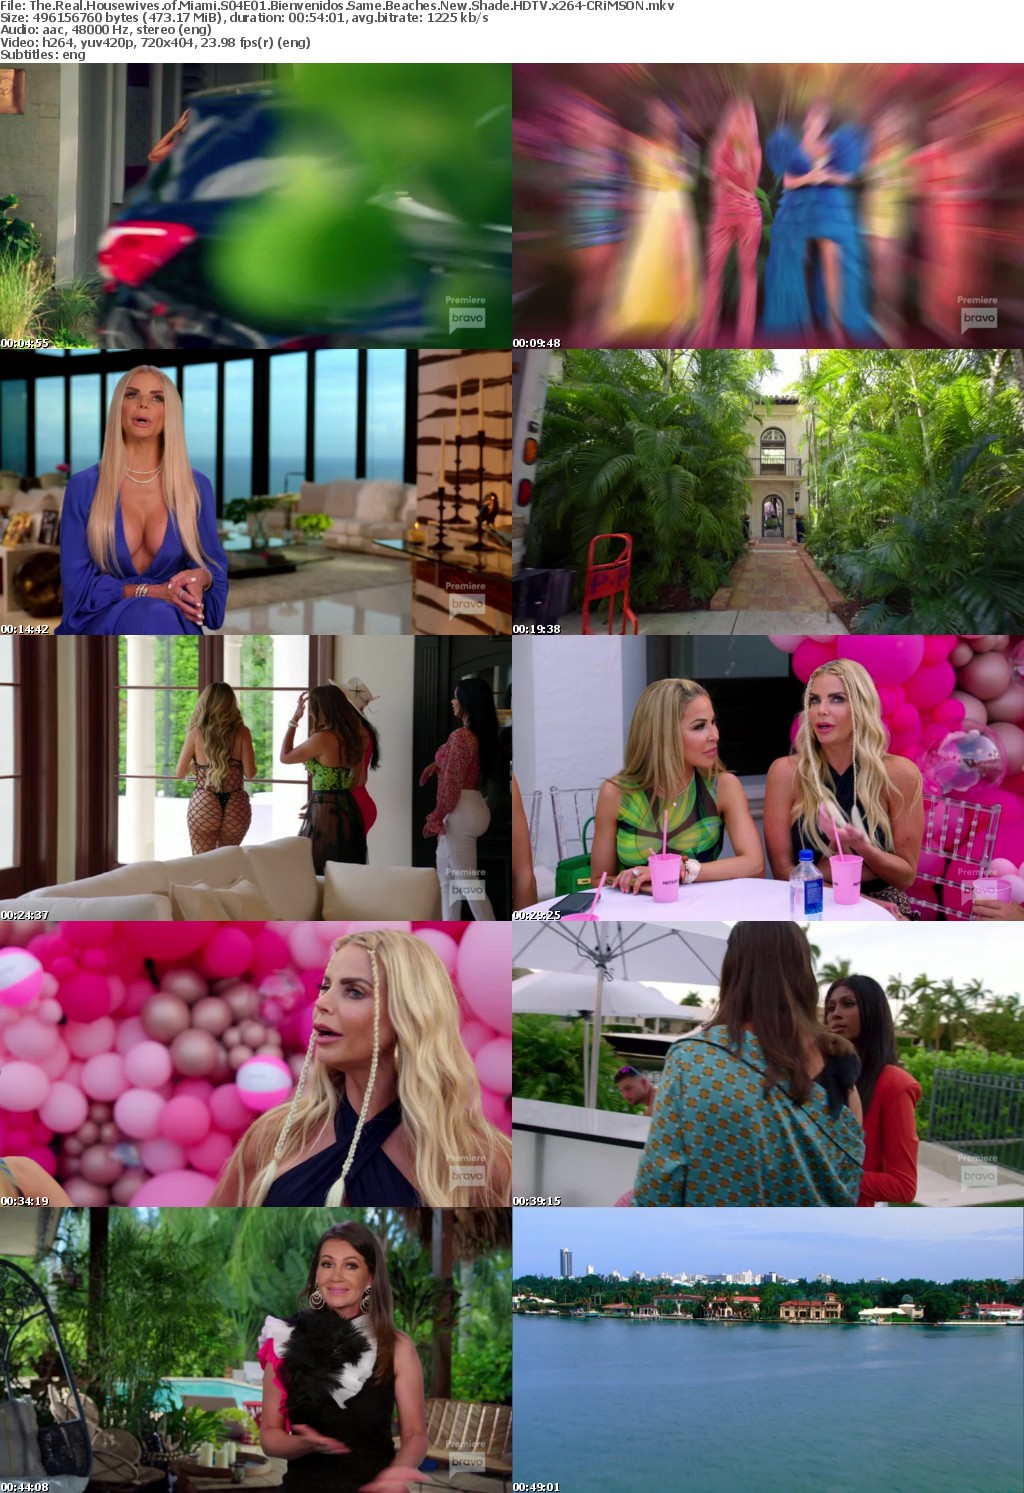 The Real Housewives of Miami S04E01 Bienvenidos Same Beaches New Shade HDTV x264-CRiMSON